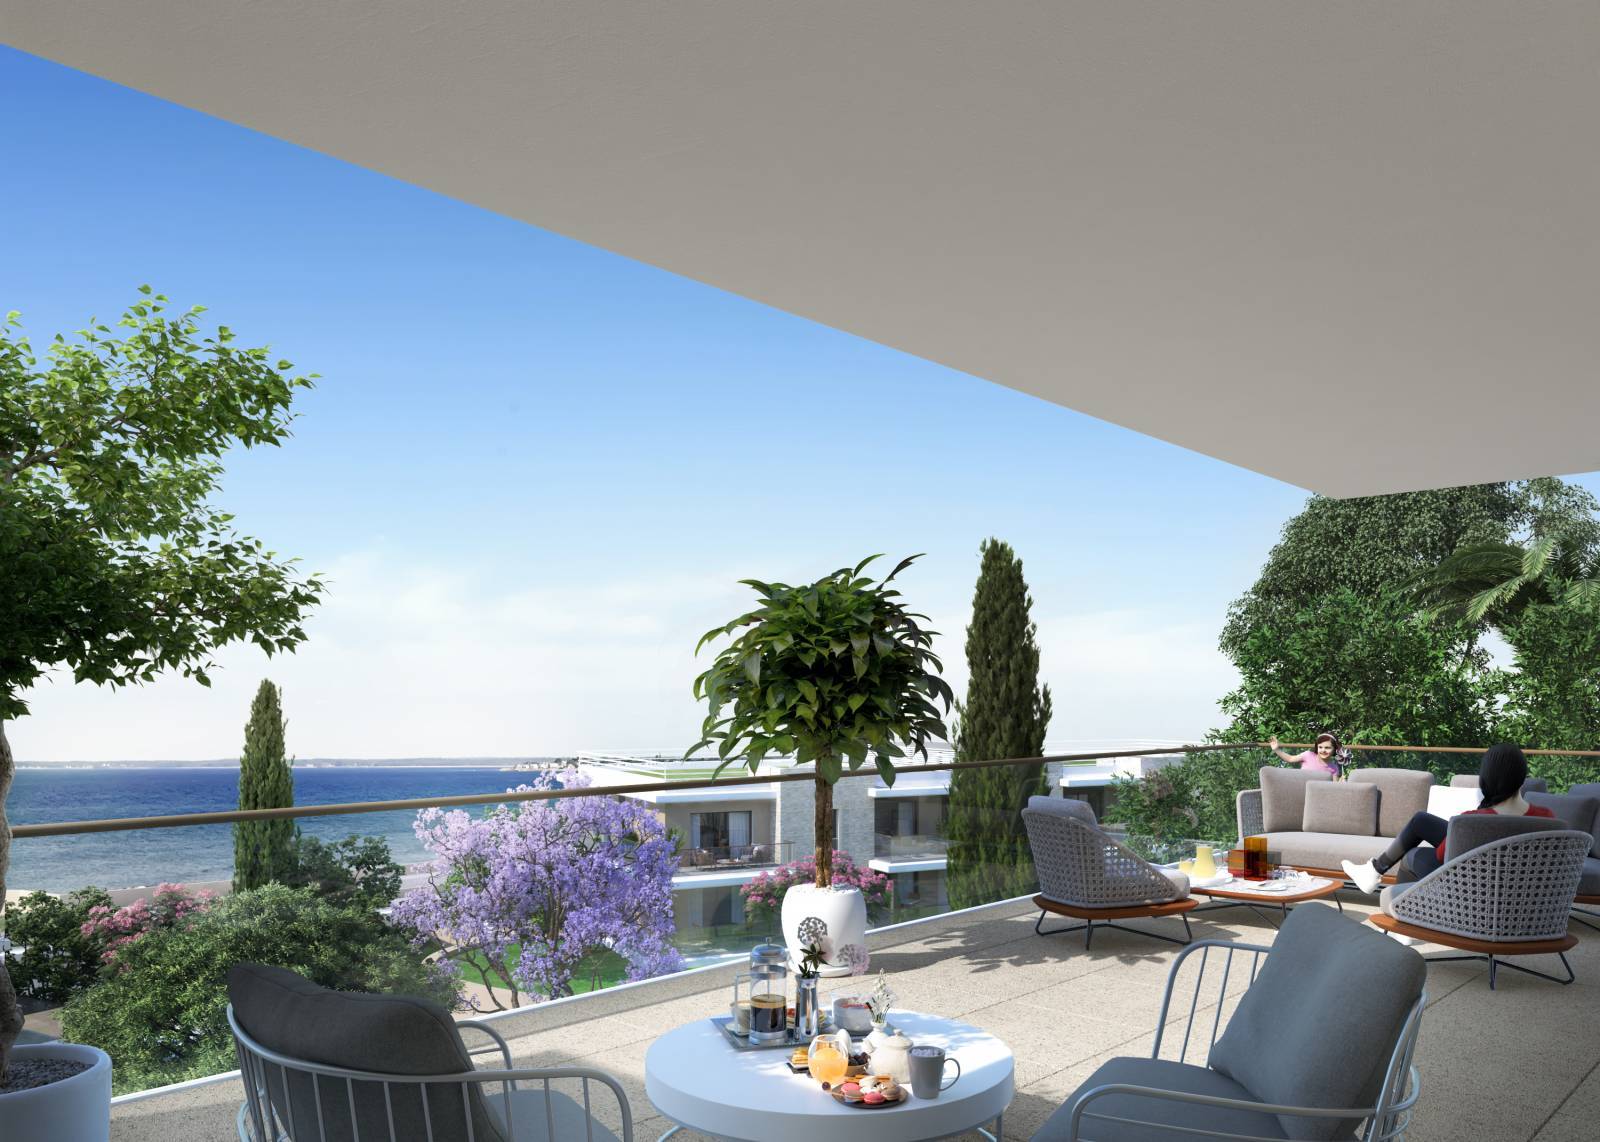 Spacieux 3 pièces de 90m² - Large terrasse vue mer - Prestations haut de gamme (3 pièces, 90 m²) Cap-d'Ail